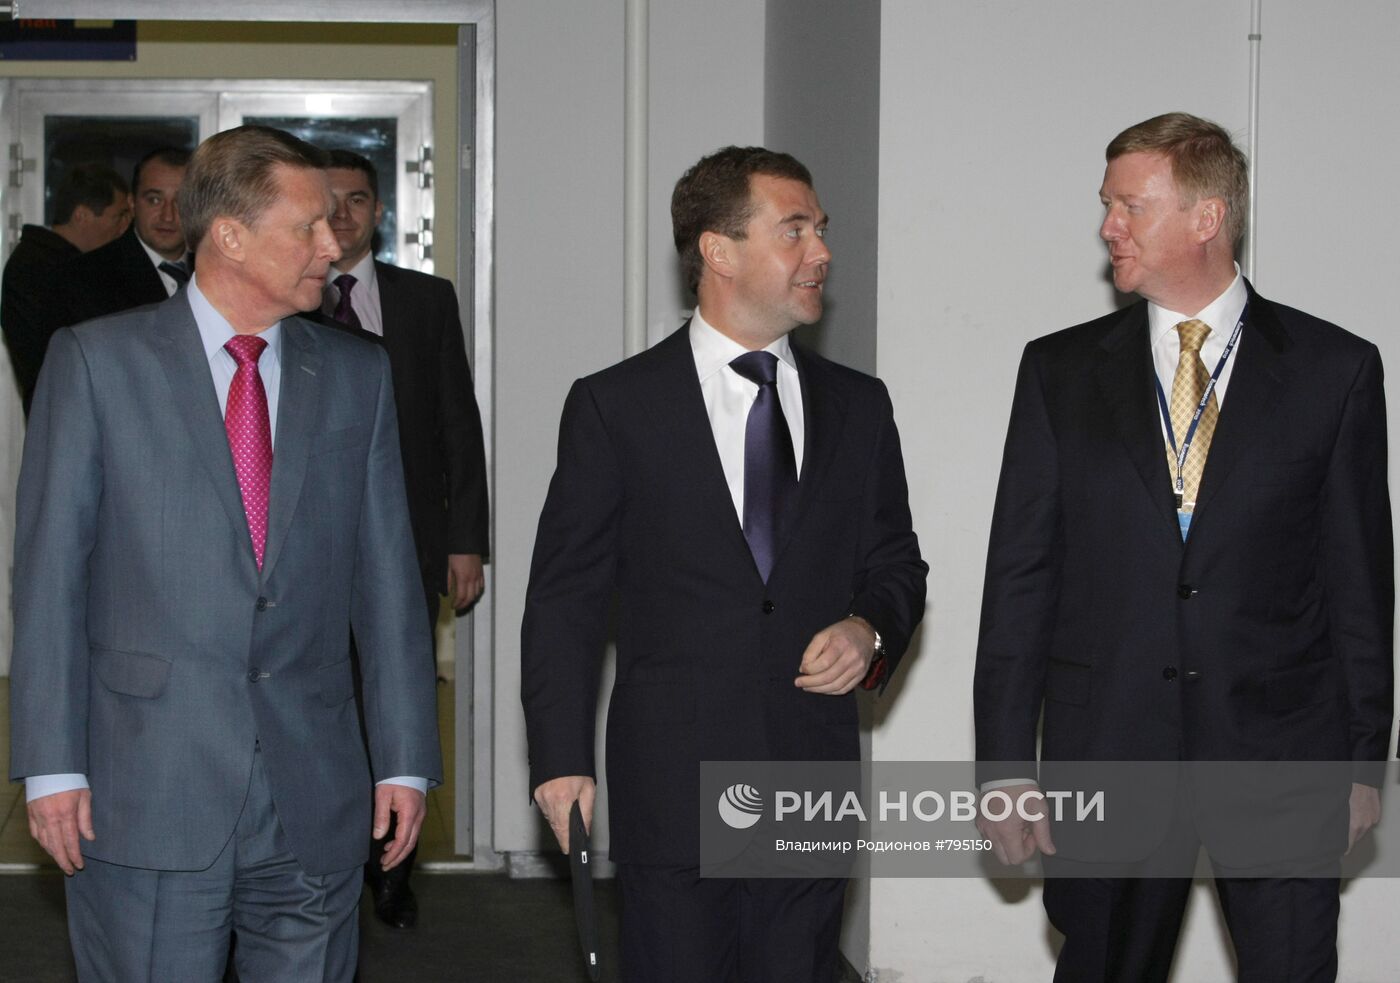 Дмитрий Медведев выступил на Форуме по нанотехнологиям